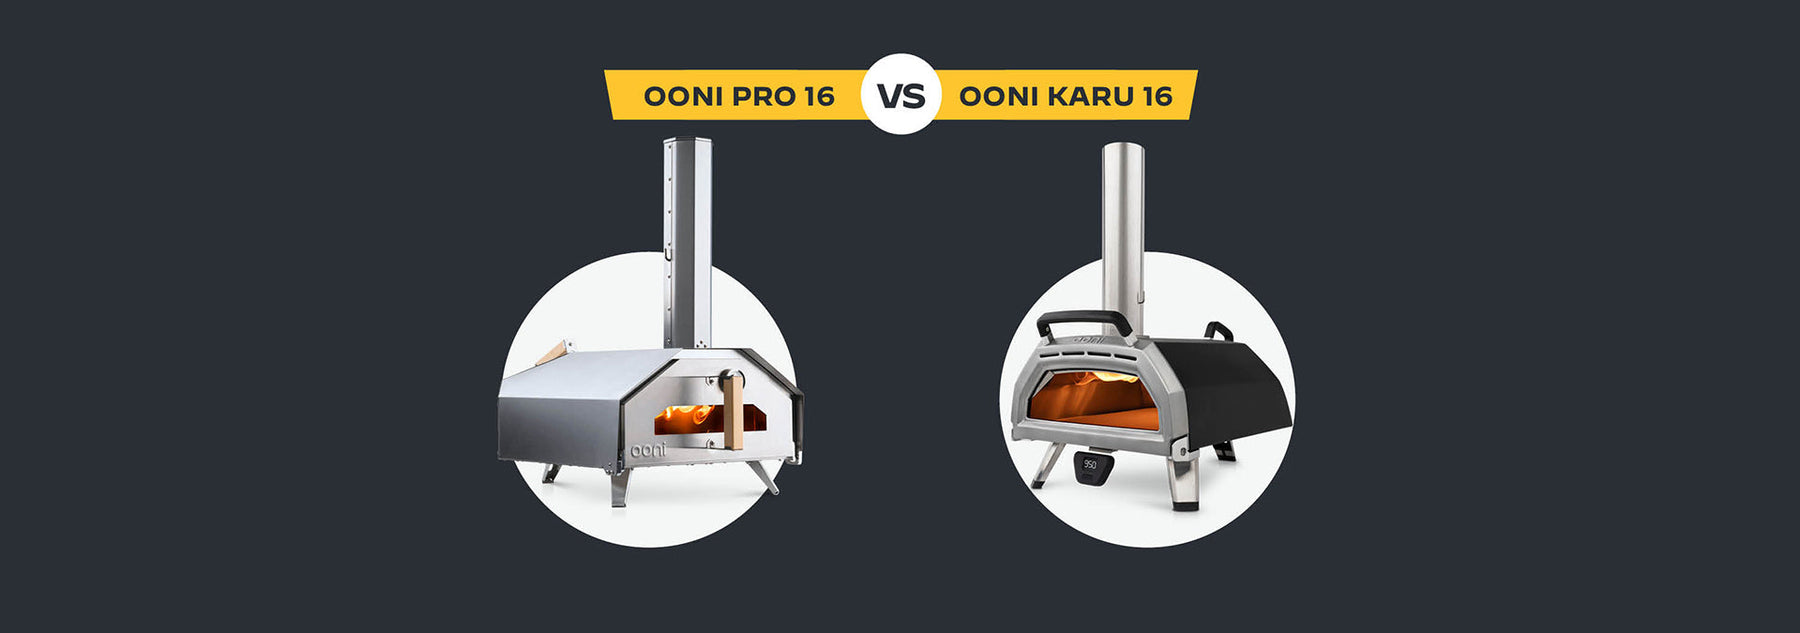 Comparison of Ooni Pro VS Ooni Karu 16